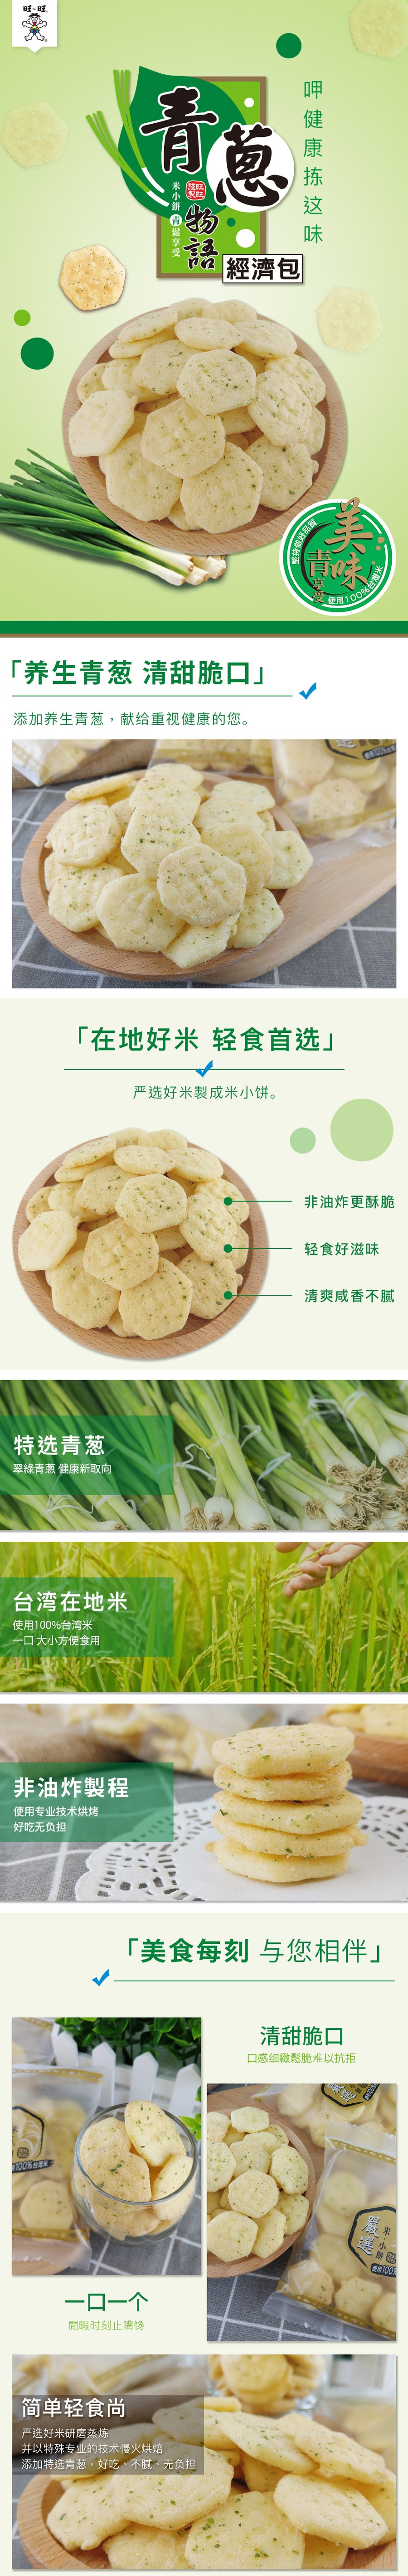 [台湾直邮] 旺旺 青葱物语 经济包 健康米果 素食(植物五辛素) 独立包装 1包 240g